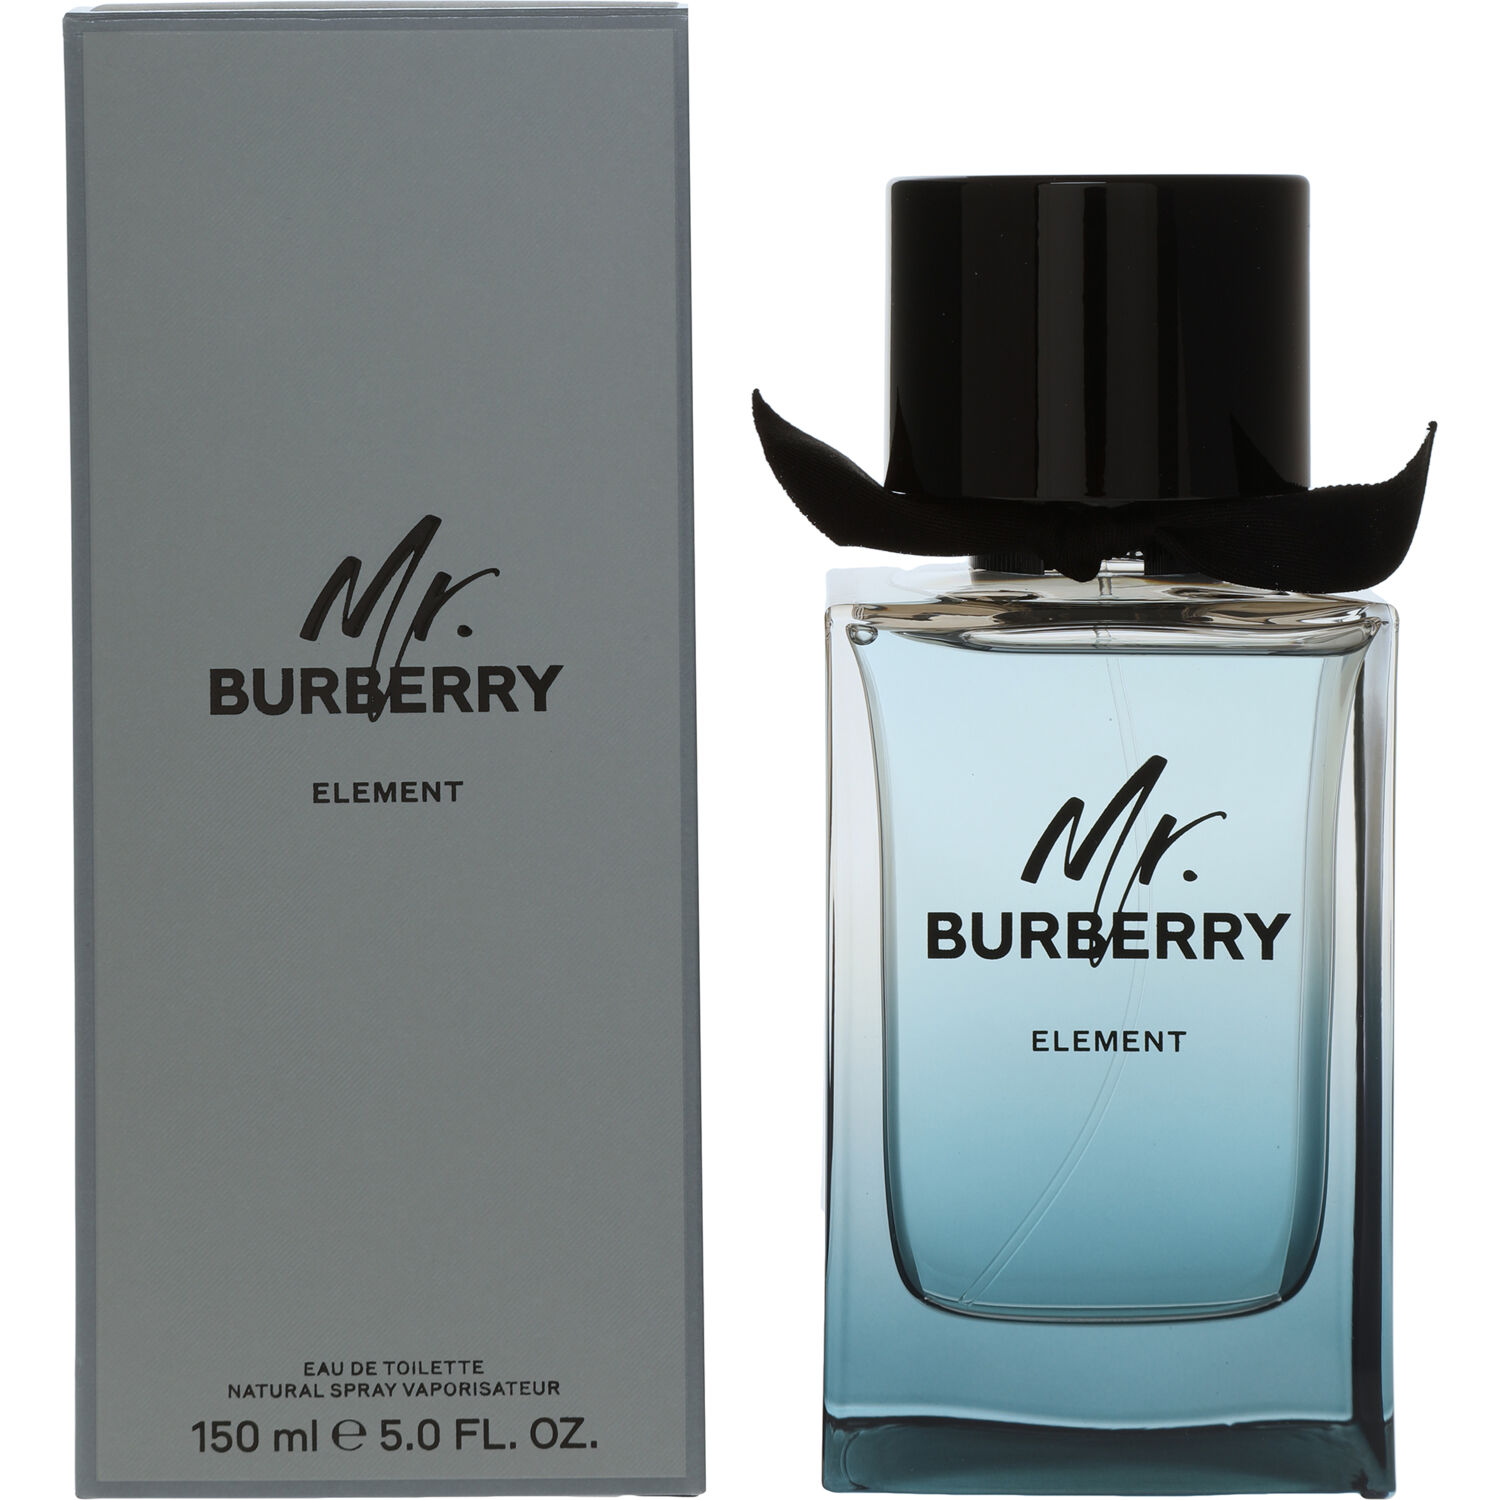 Burberry Mr. Burberry Element Eau de Toilette 150ml Spray